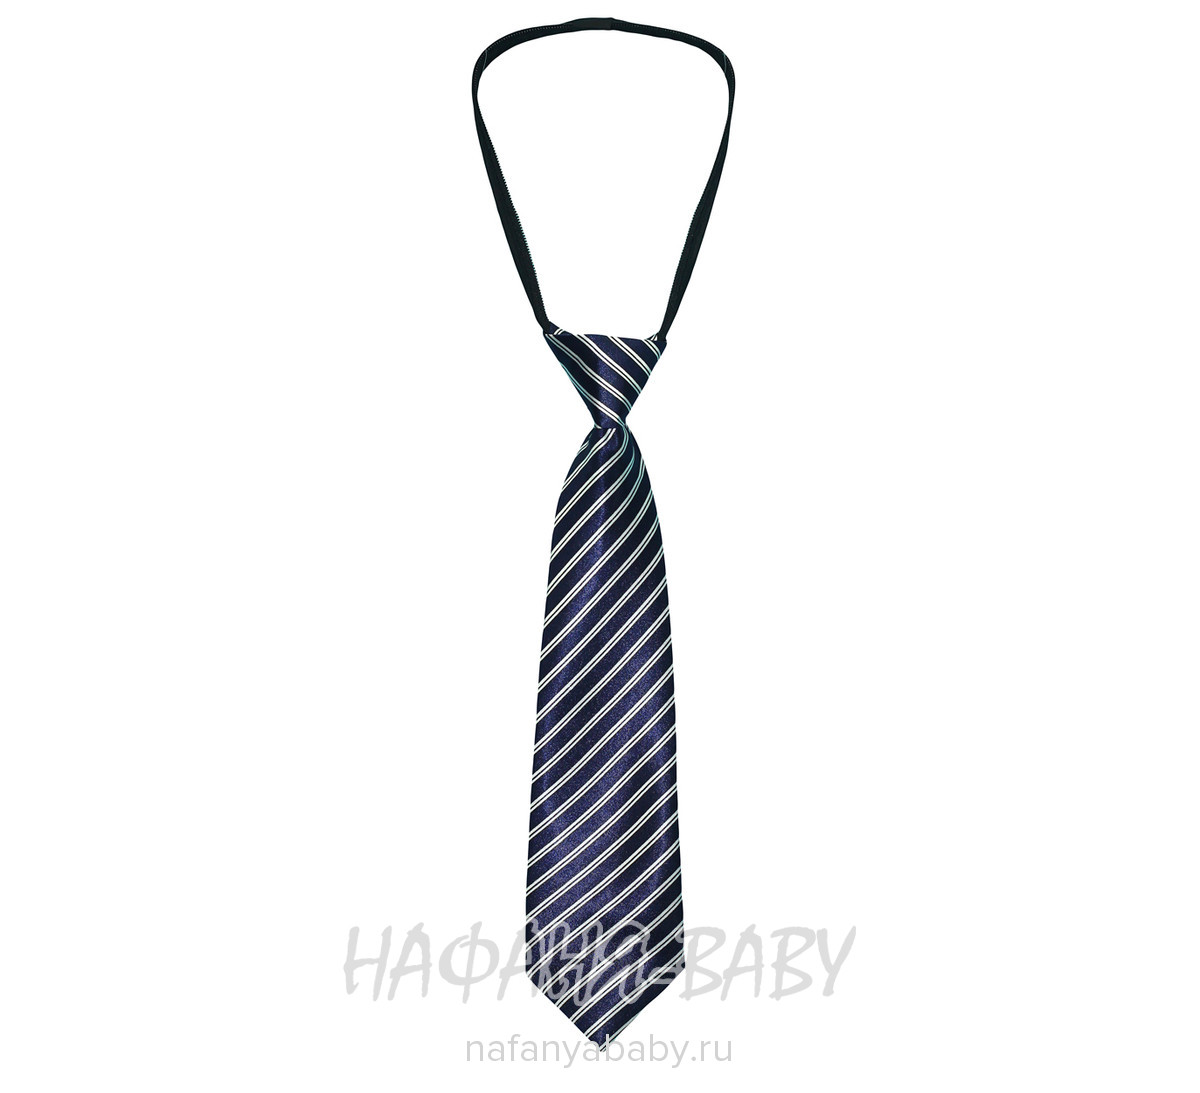 Детский галстук C.R., купить в интернет магазине Нафаня. арт: 4036.